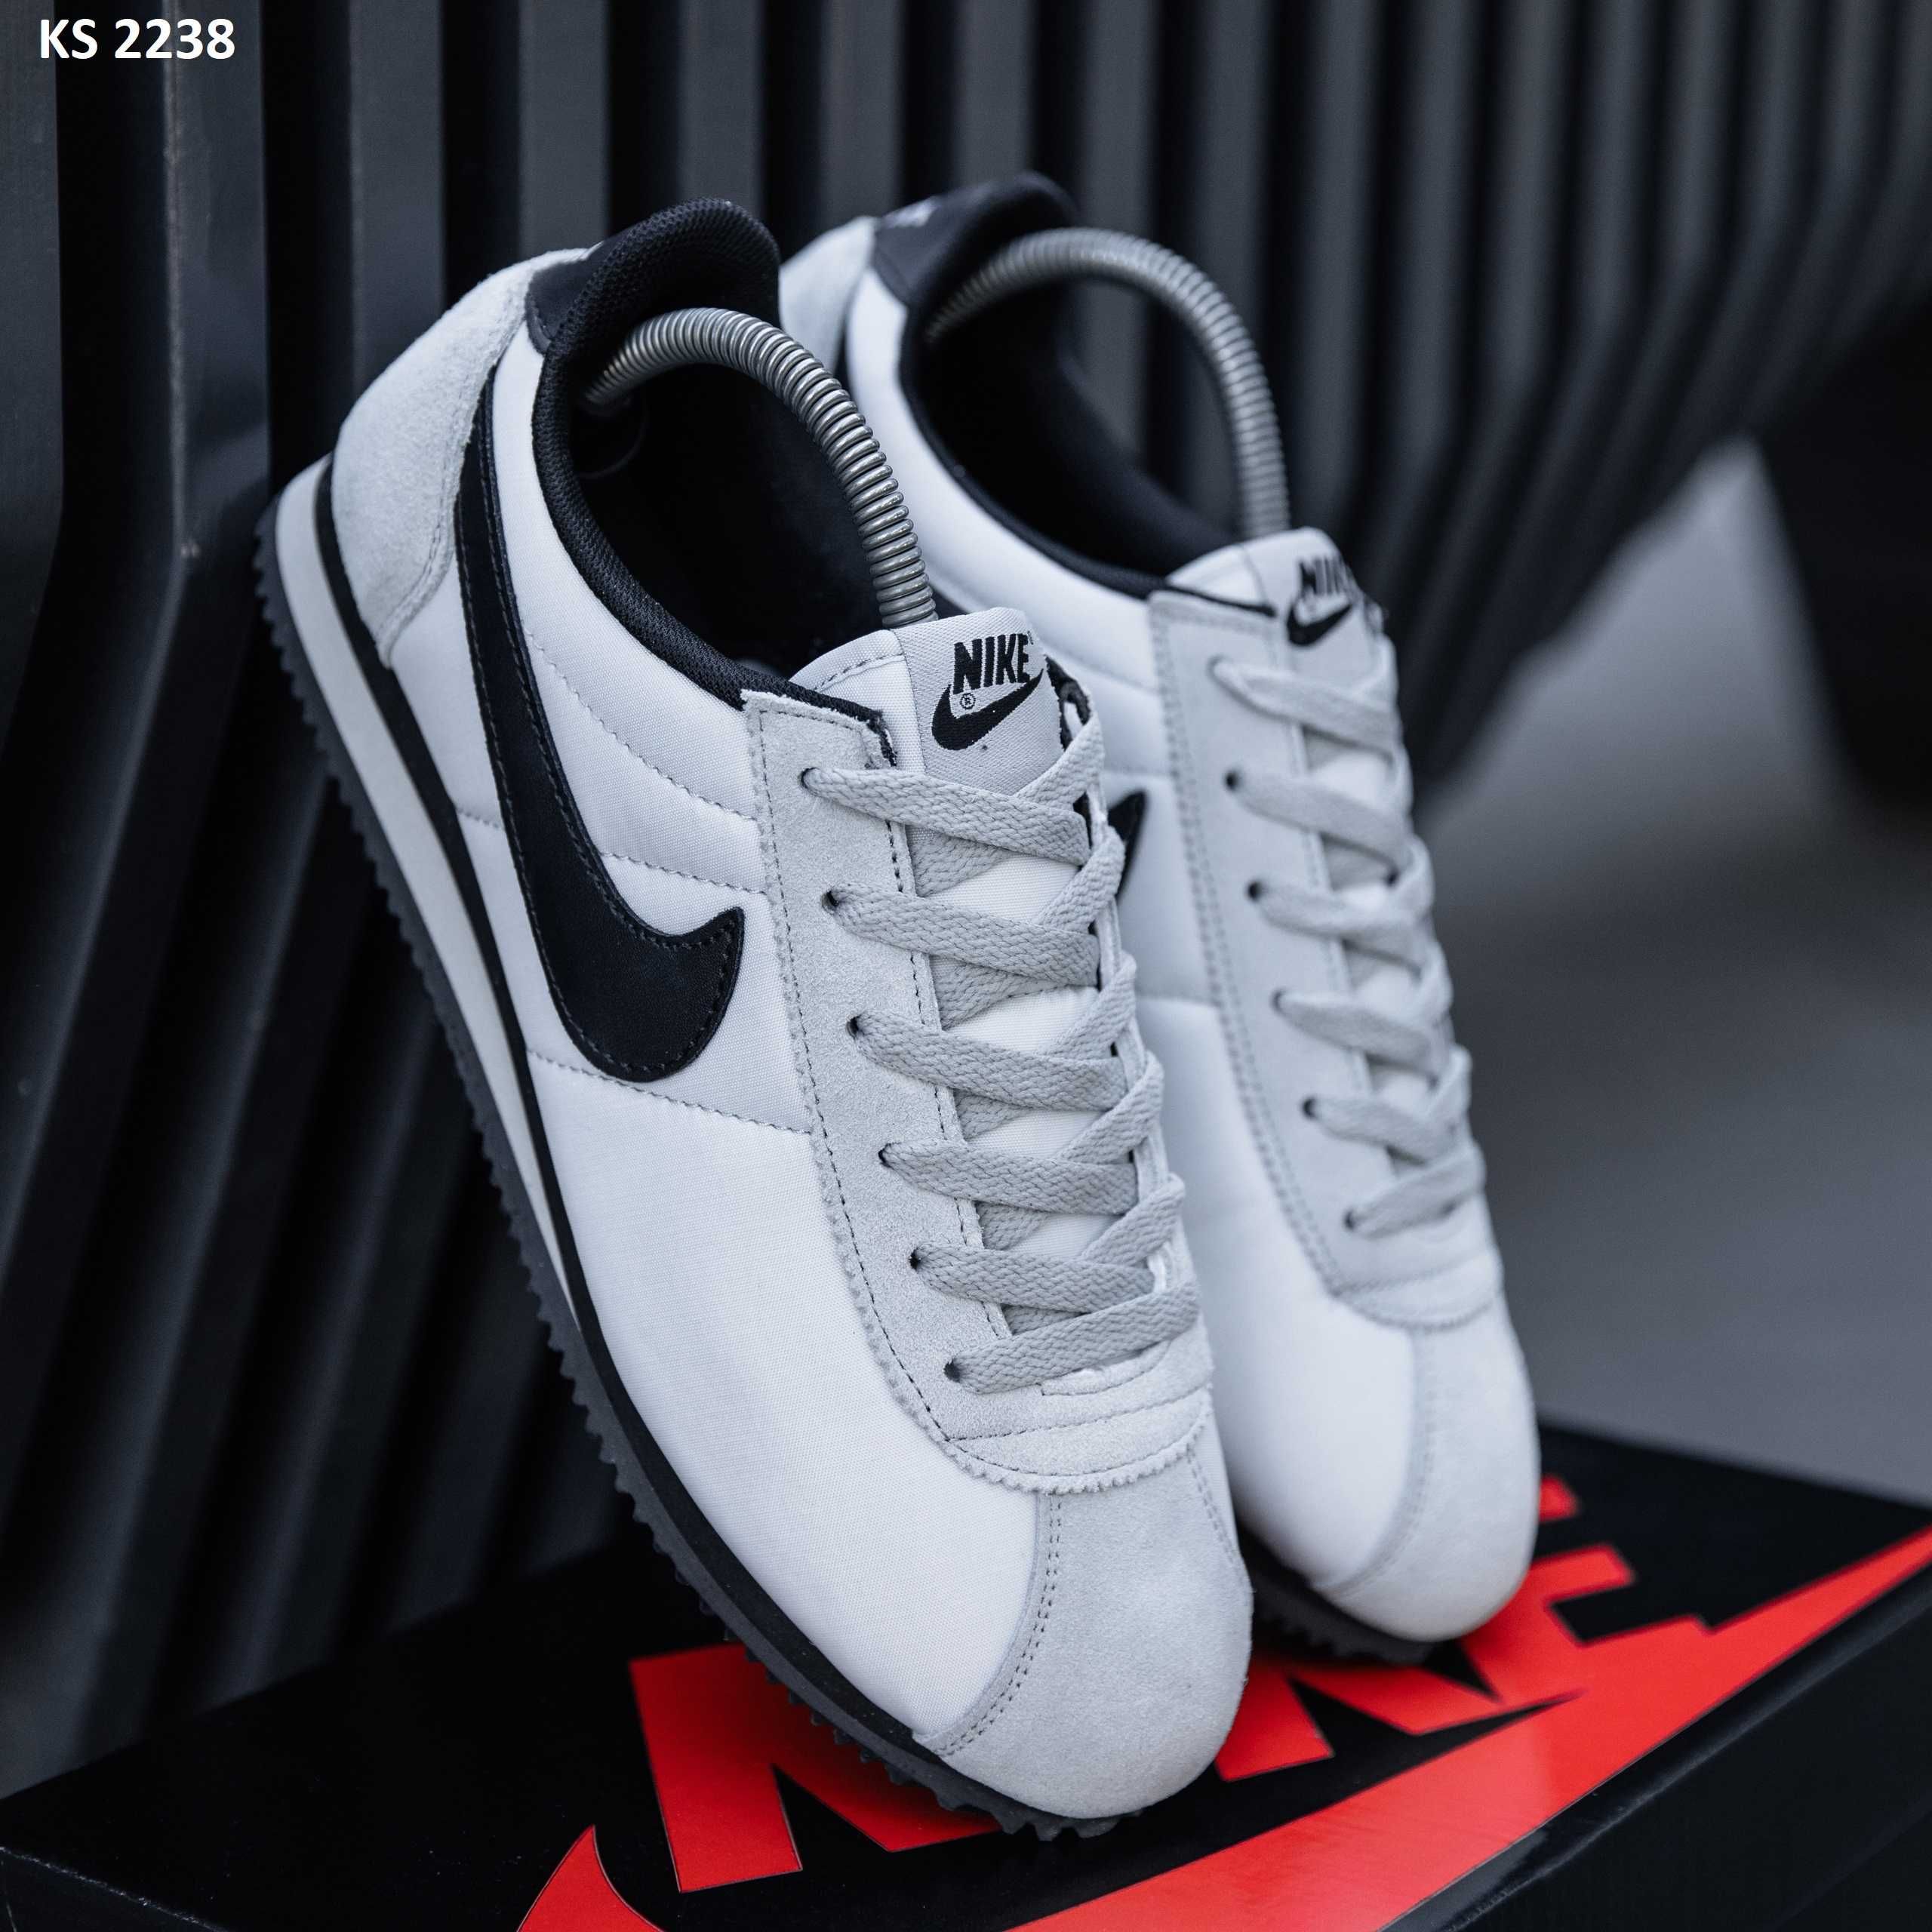 Чоловічі кросівки/взуття Nike Cortez! Артикул: KS 2238